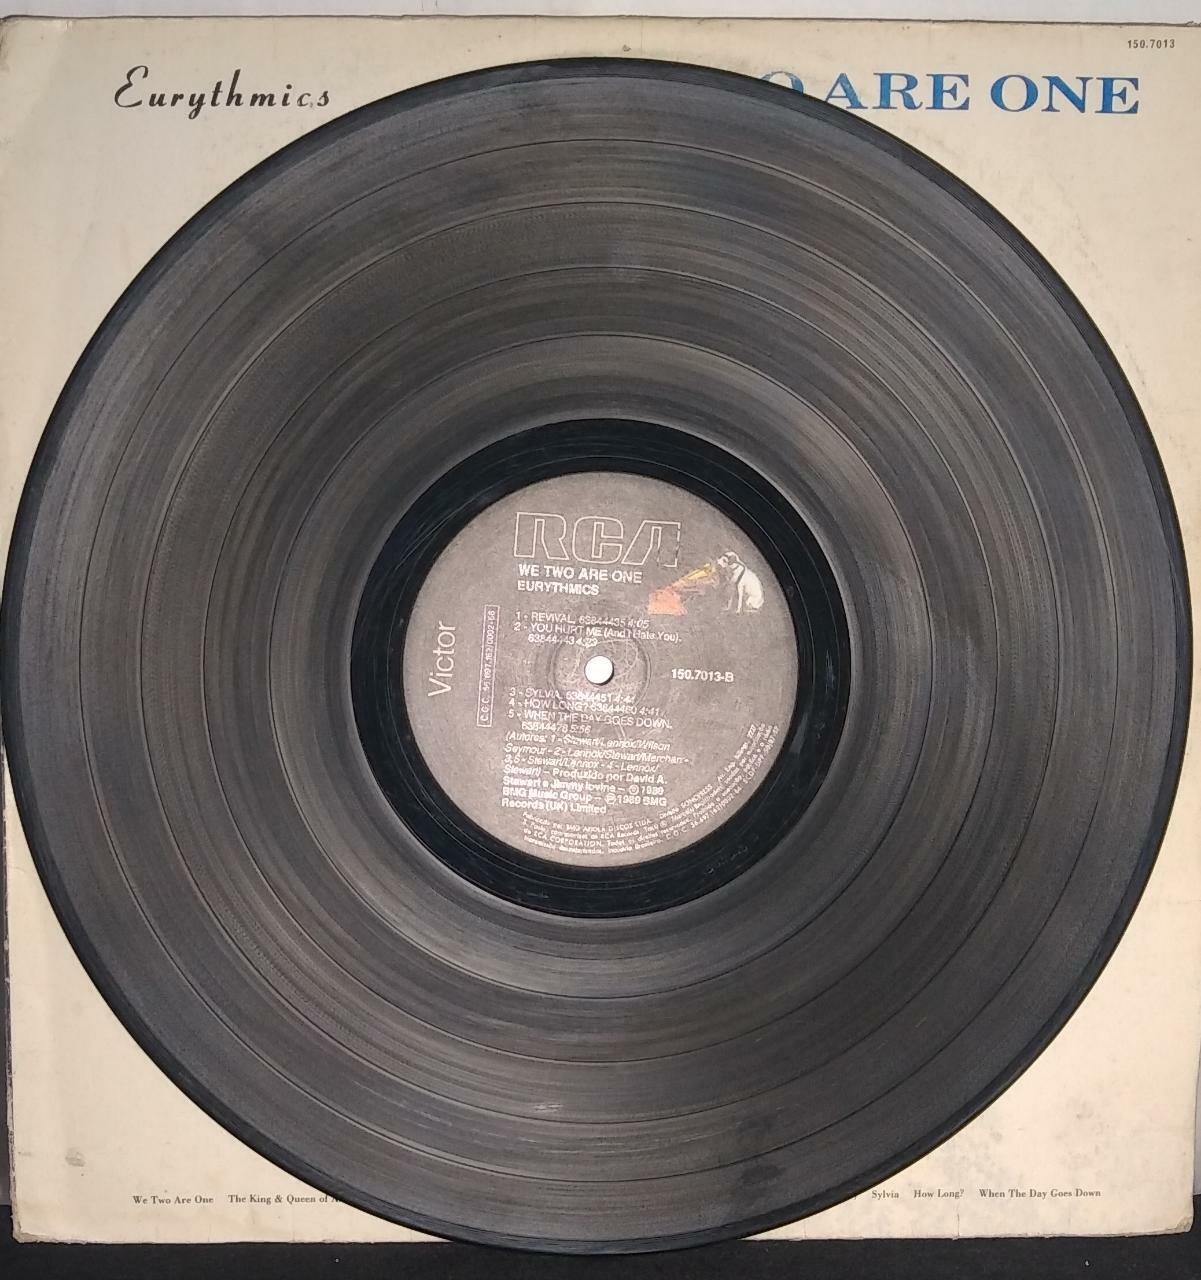 Vinil - Eurythmics - We Too Are One